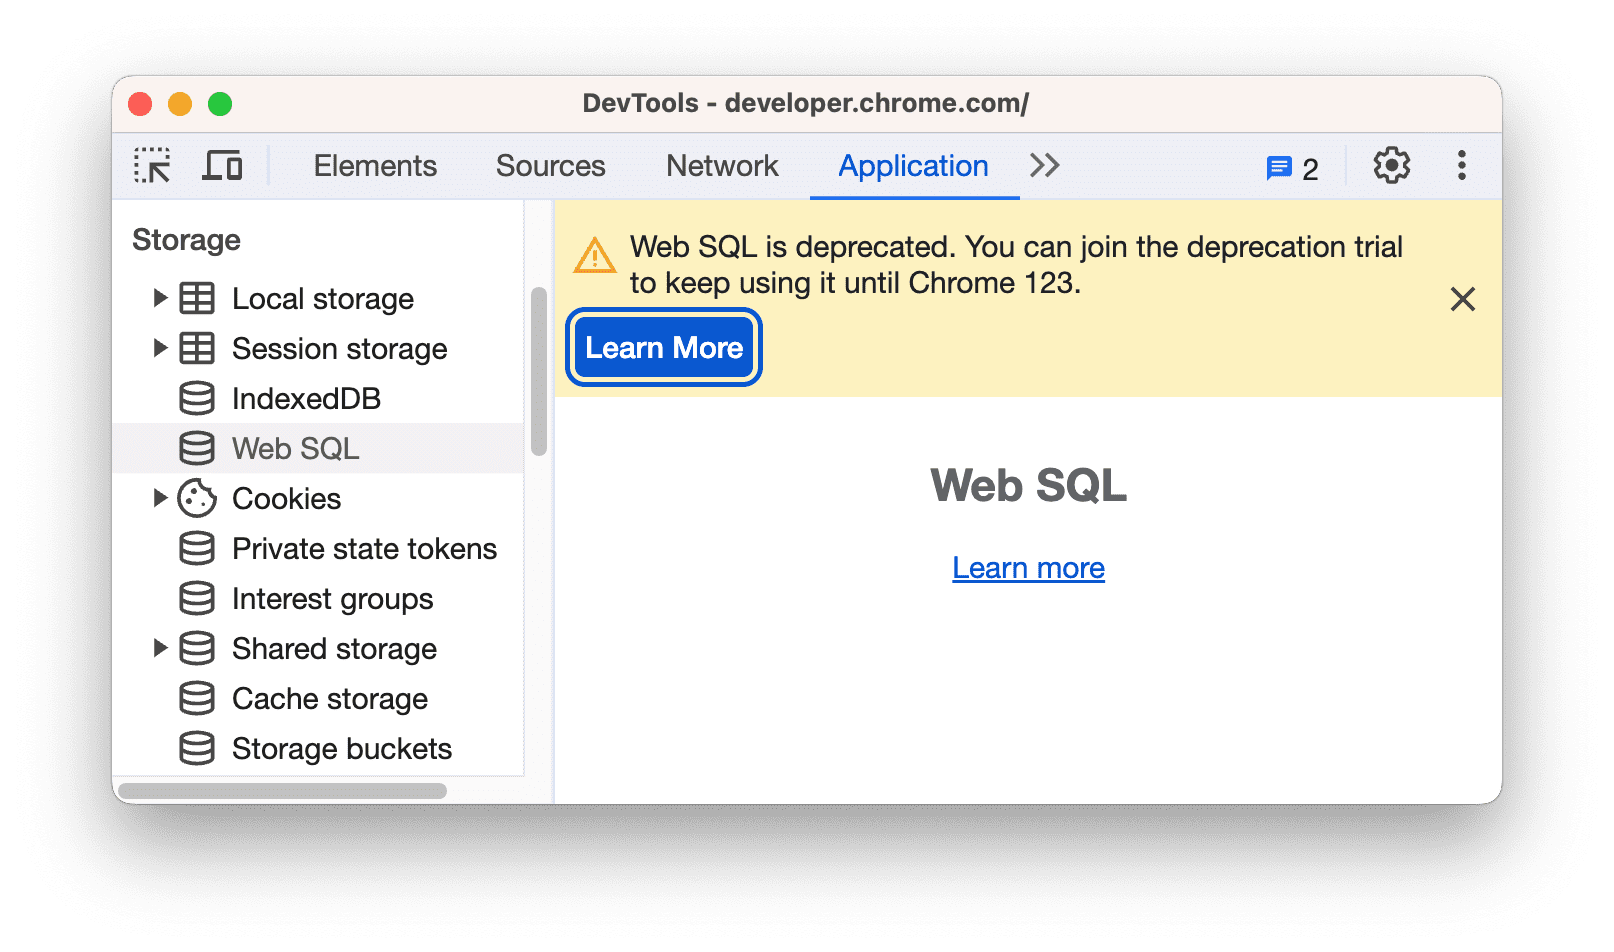 Cảnh báo về việc ngừng sử dụng Web SQL.